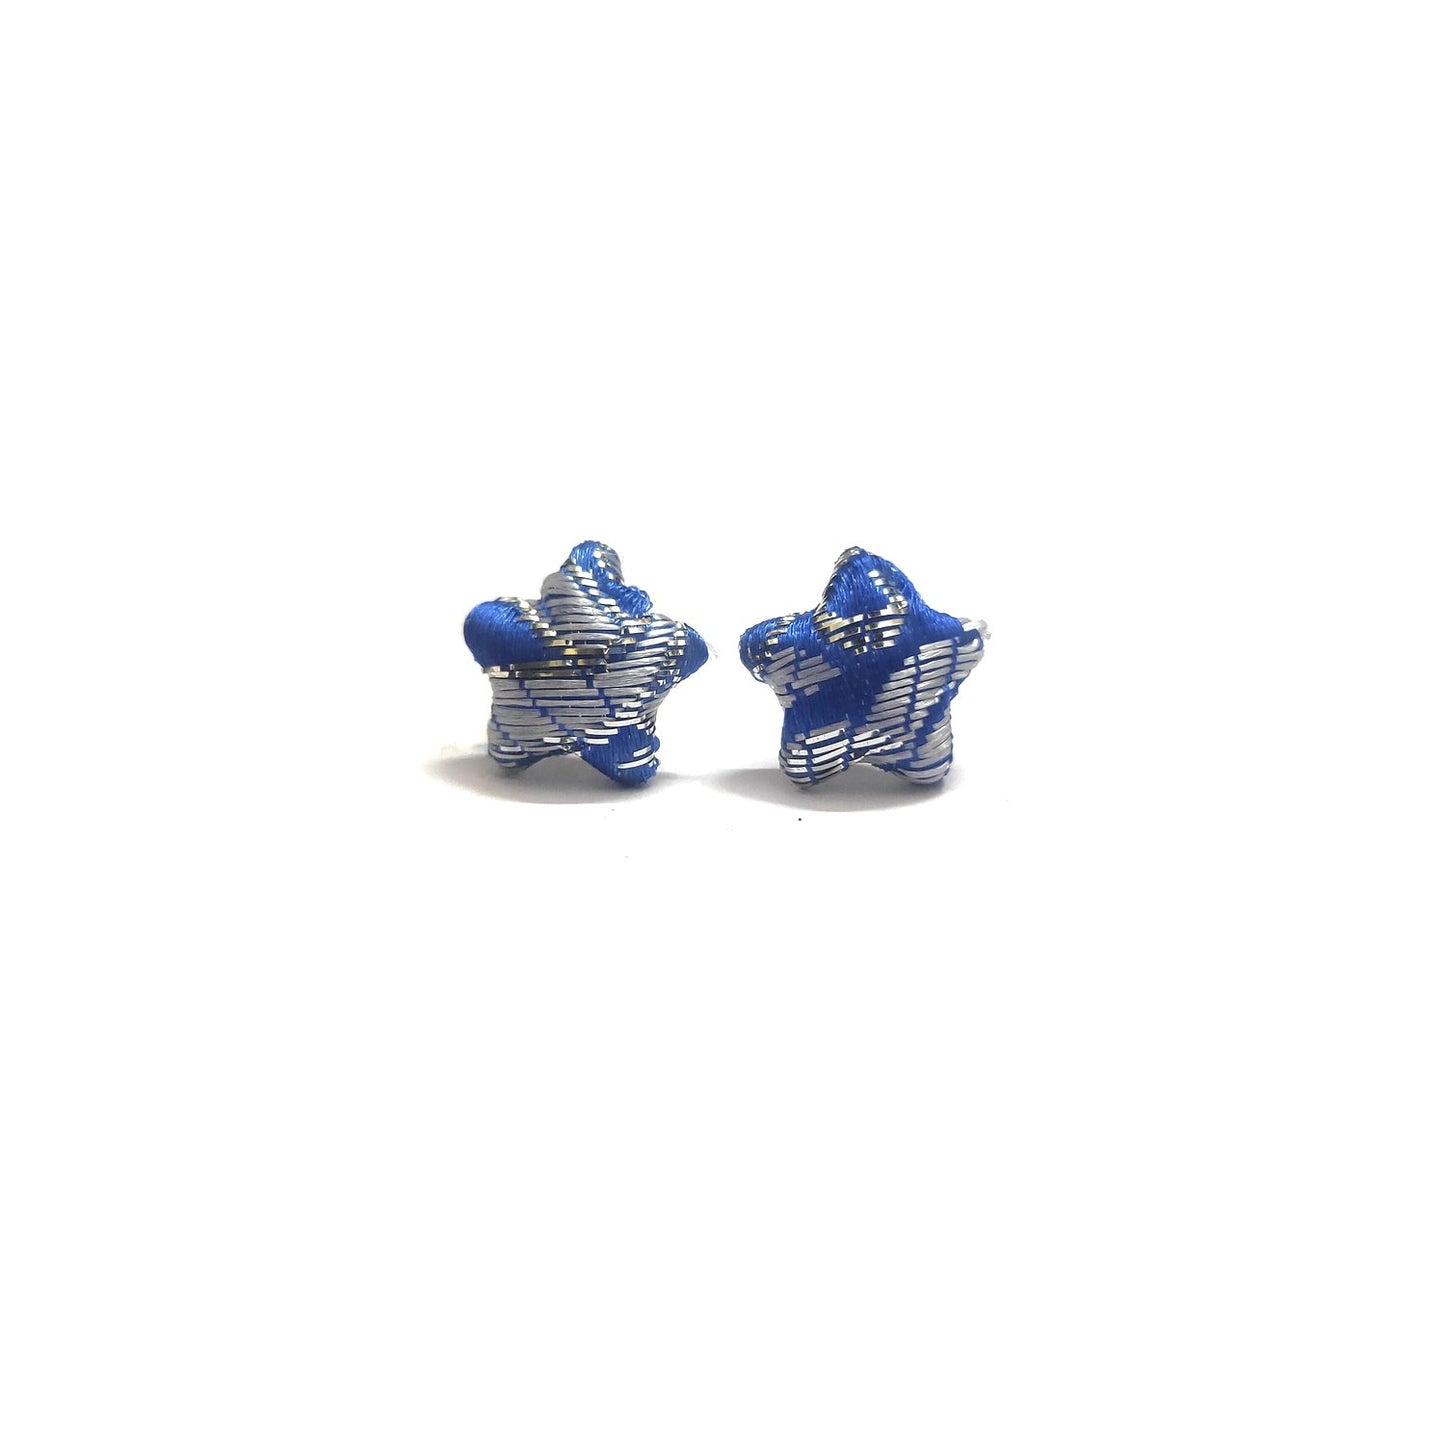 Anokhi Ada Fancy Small Star Shaped Stud Earrings for Girls ( Blue, AS-07D )